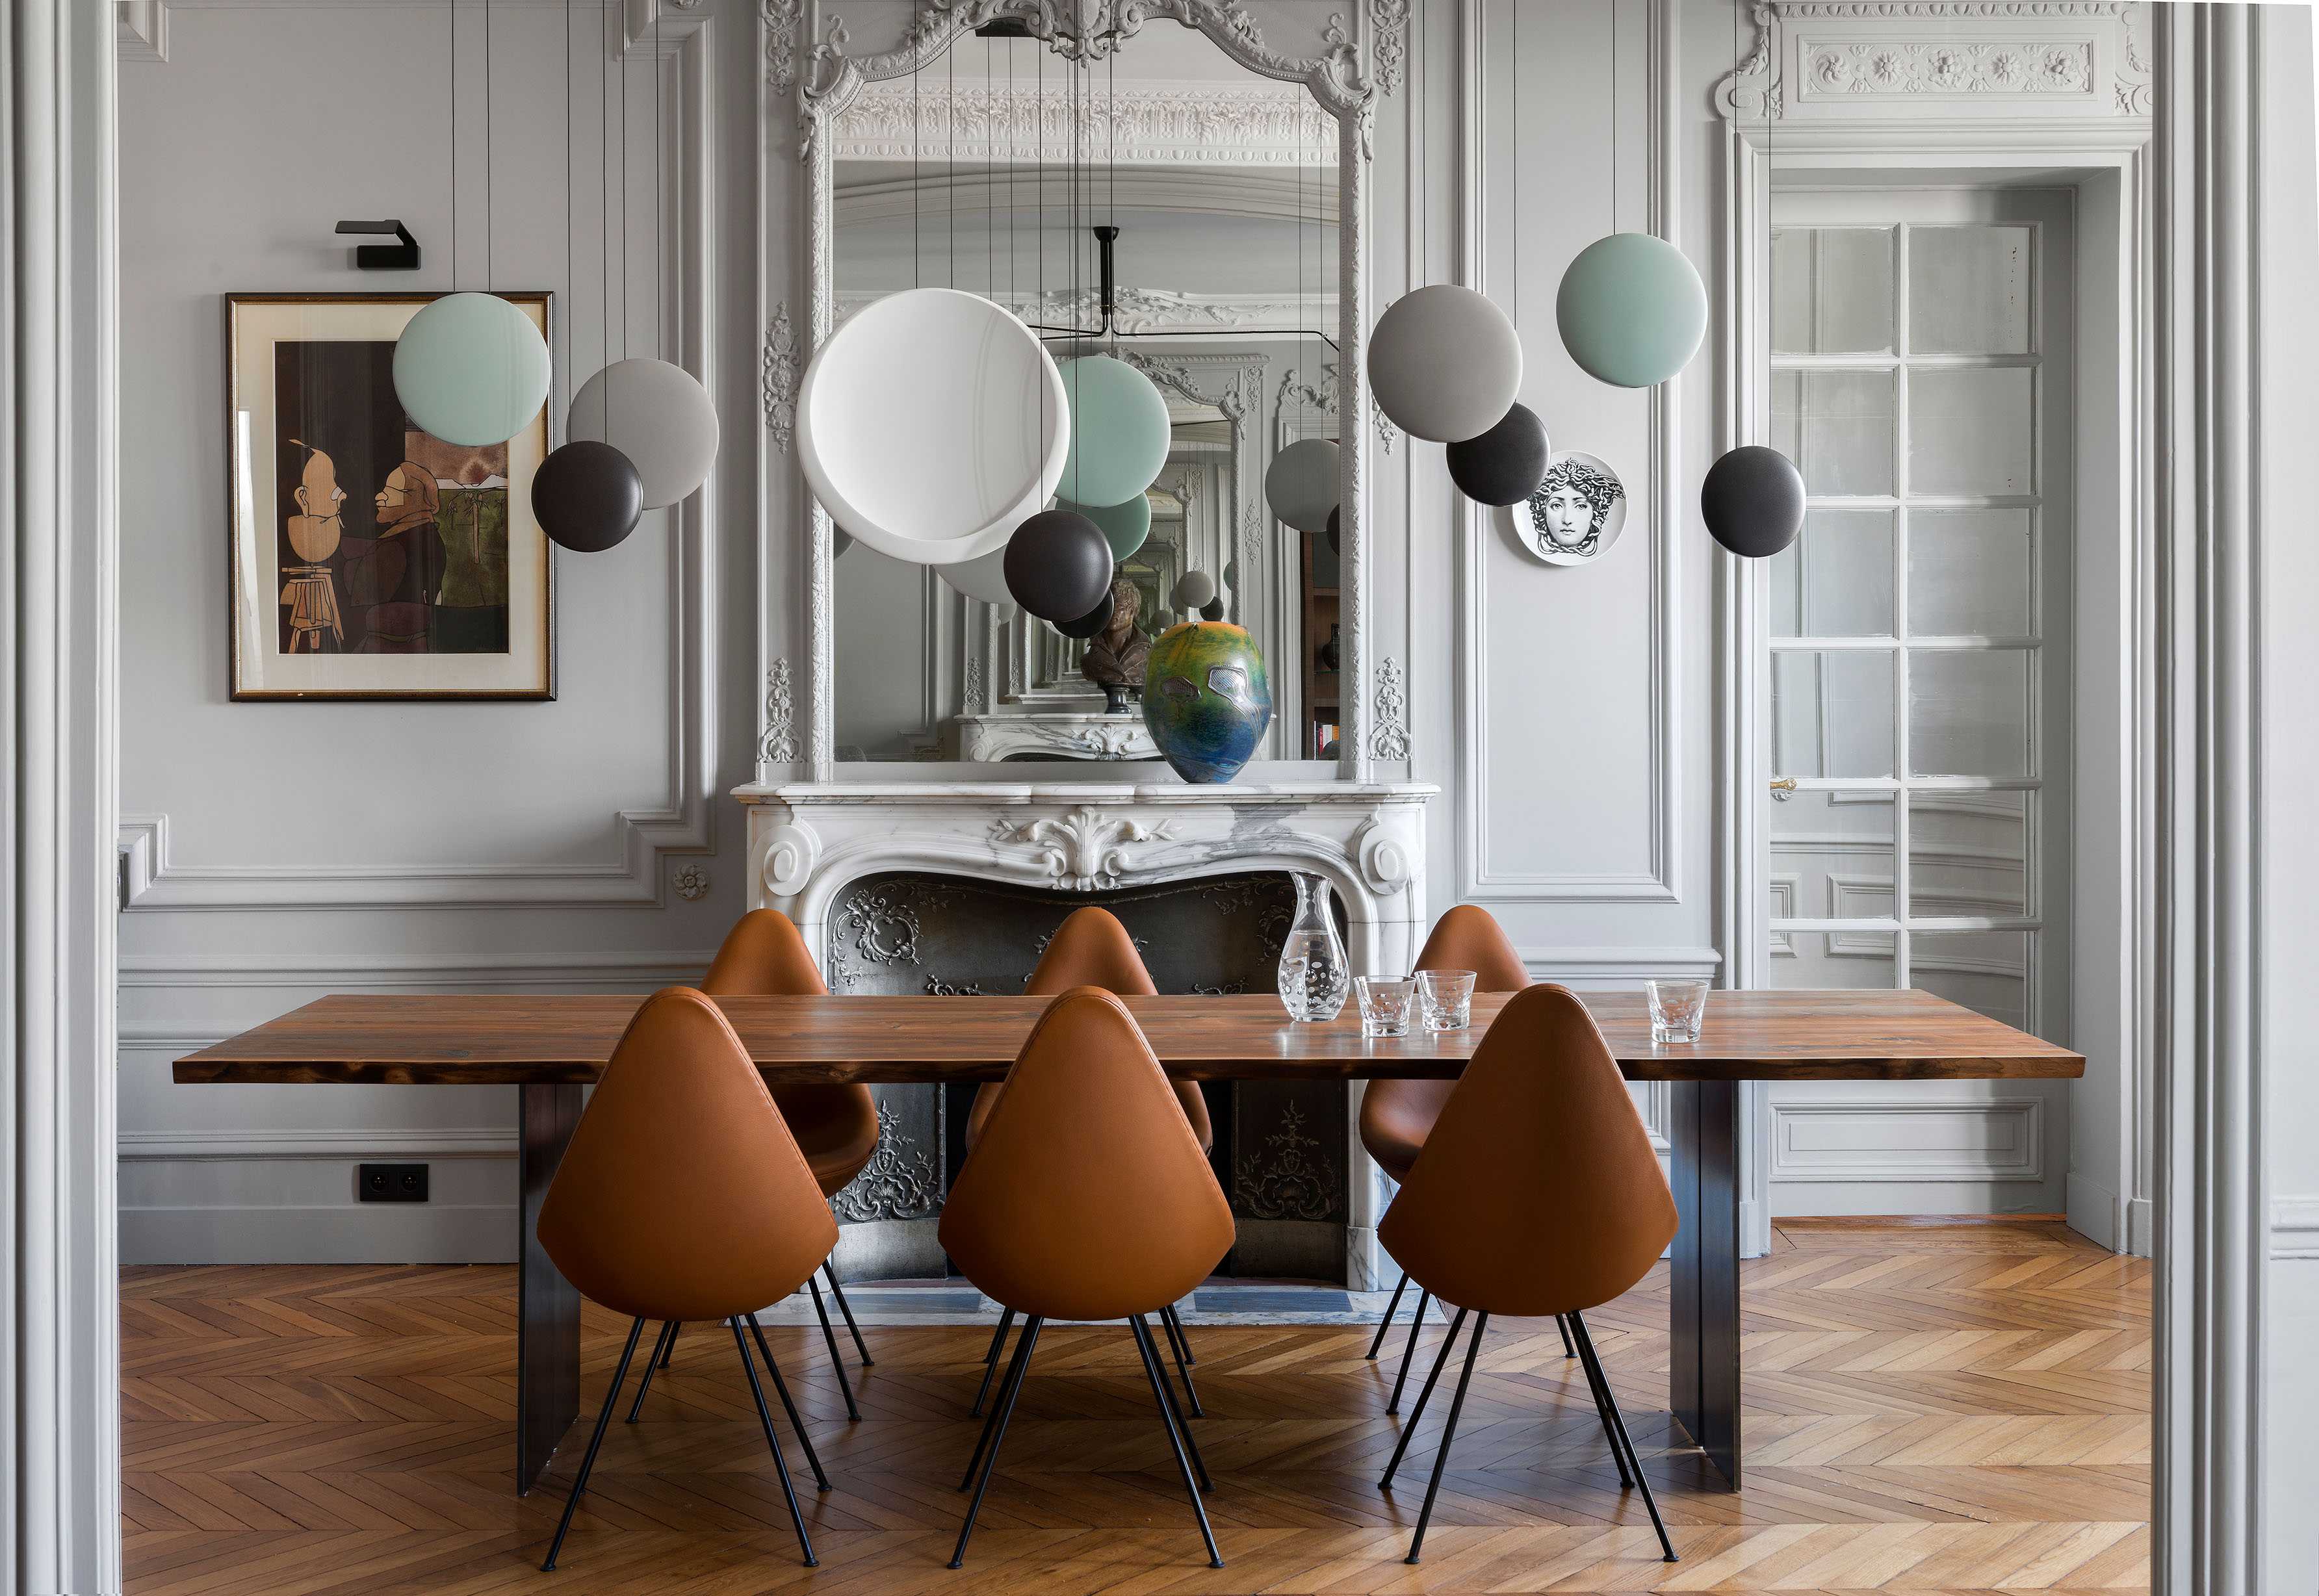 Redecorating your home with Créateurs d'intérieur